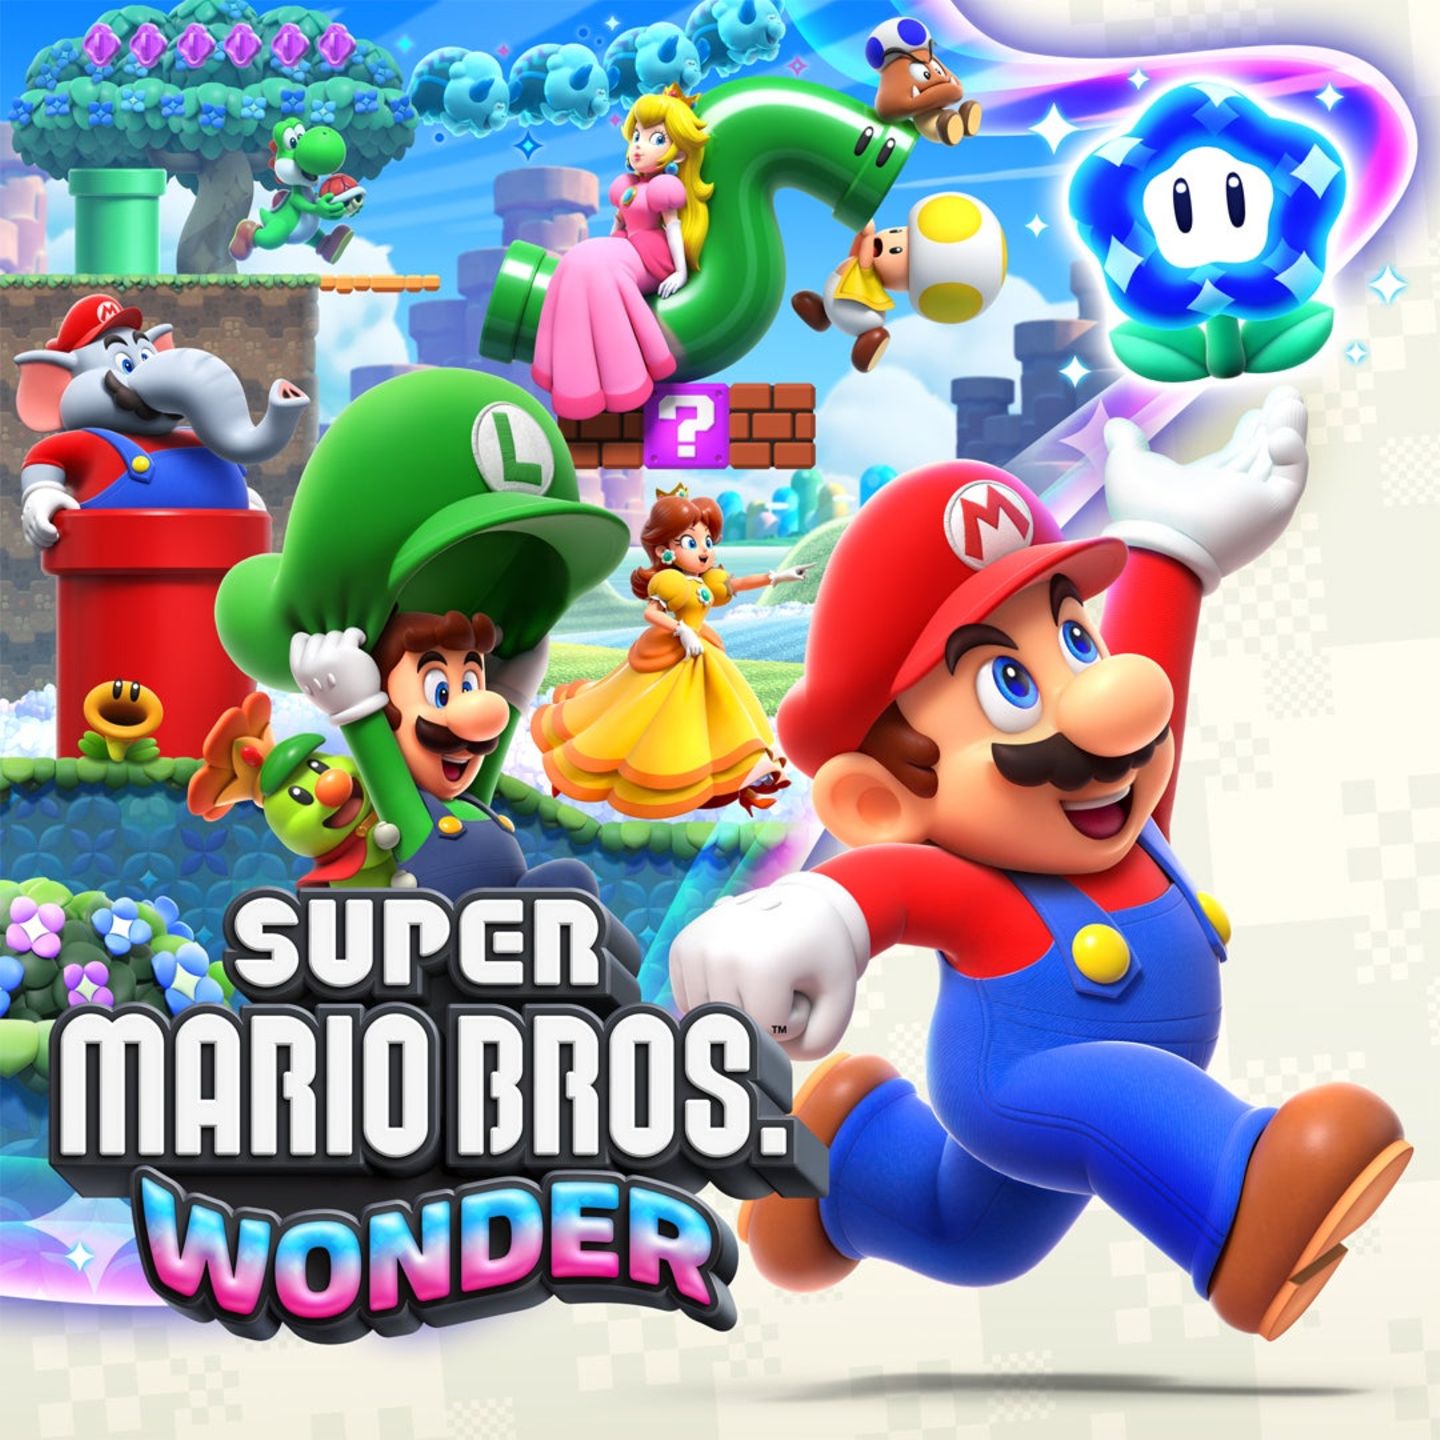 Seit über 40 Jahren springt Mario jetzt schon über unsere Bildschirme - und das neben den Ausflügen in 3D-Welten auch trotzdem weiter ganz altmodisch von links nach rechts, bis das Ende des Levels erreicht wird. So auch in "Super Mario Wonder" - und dass nach so langer Zeit immer noch so viele neue Ideen und kreative Überraschungen auf uns warten, an ein kleines Wunder. Langweilig wird es hier schon alleine deshalb nicht, weil wieder mehrere Mitspieler gleichzeitig in die bunten Welten einsteigen können. Besonders nett für Familien: Jüngere Spieler:innen können jetzt Figuren nehmen, die keinen Schaden erleiden und bleiben an schwierigen Stellen nicht gleich auf der Strecke. Super Mario Bros. Wonder, Nintendo Switch, 50 Euro Henning, stellvertretender Head of Video 